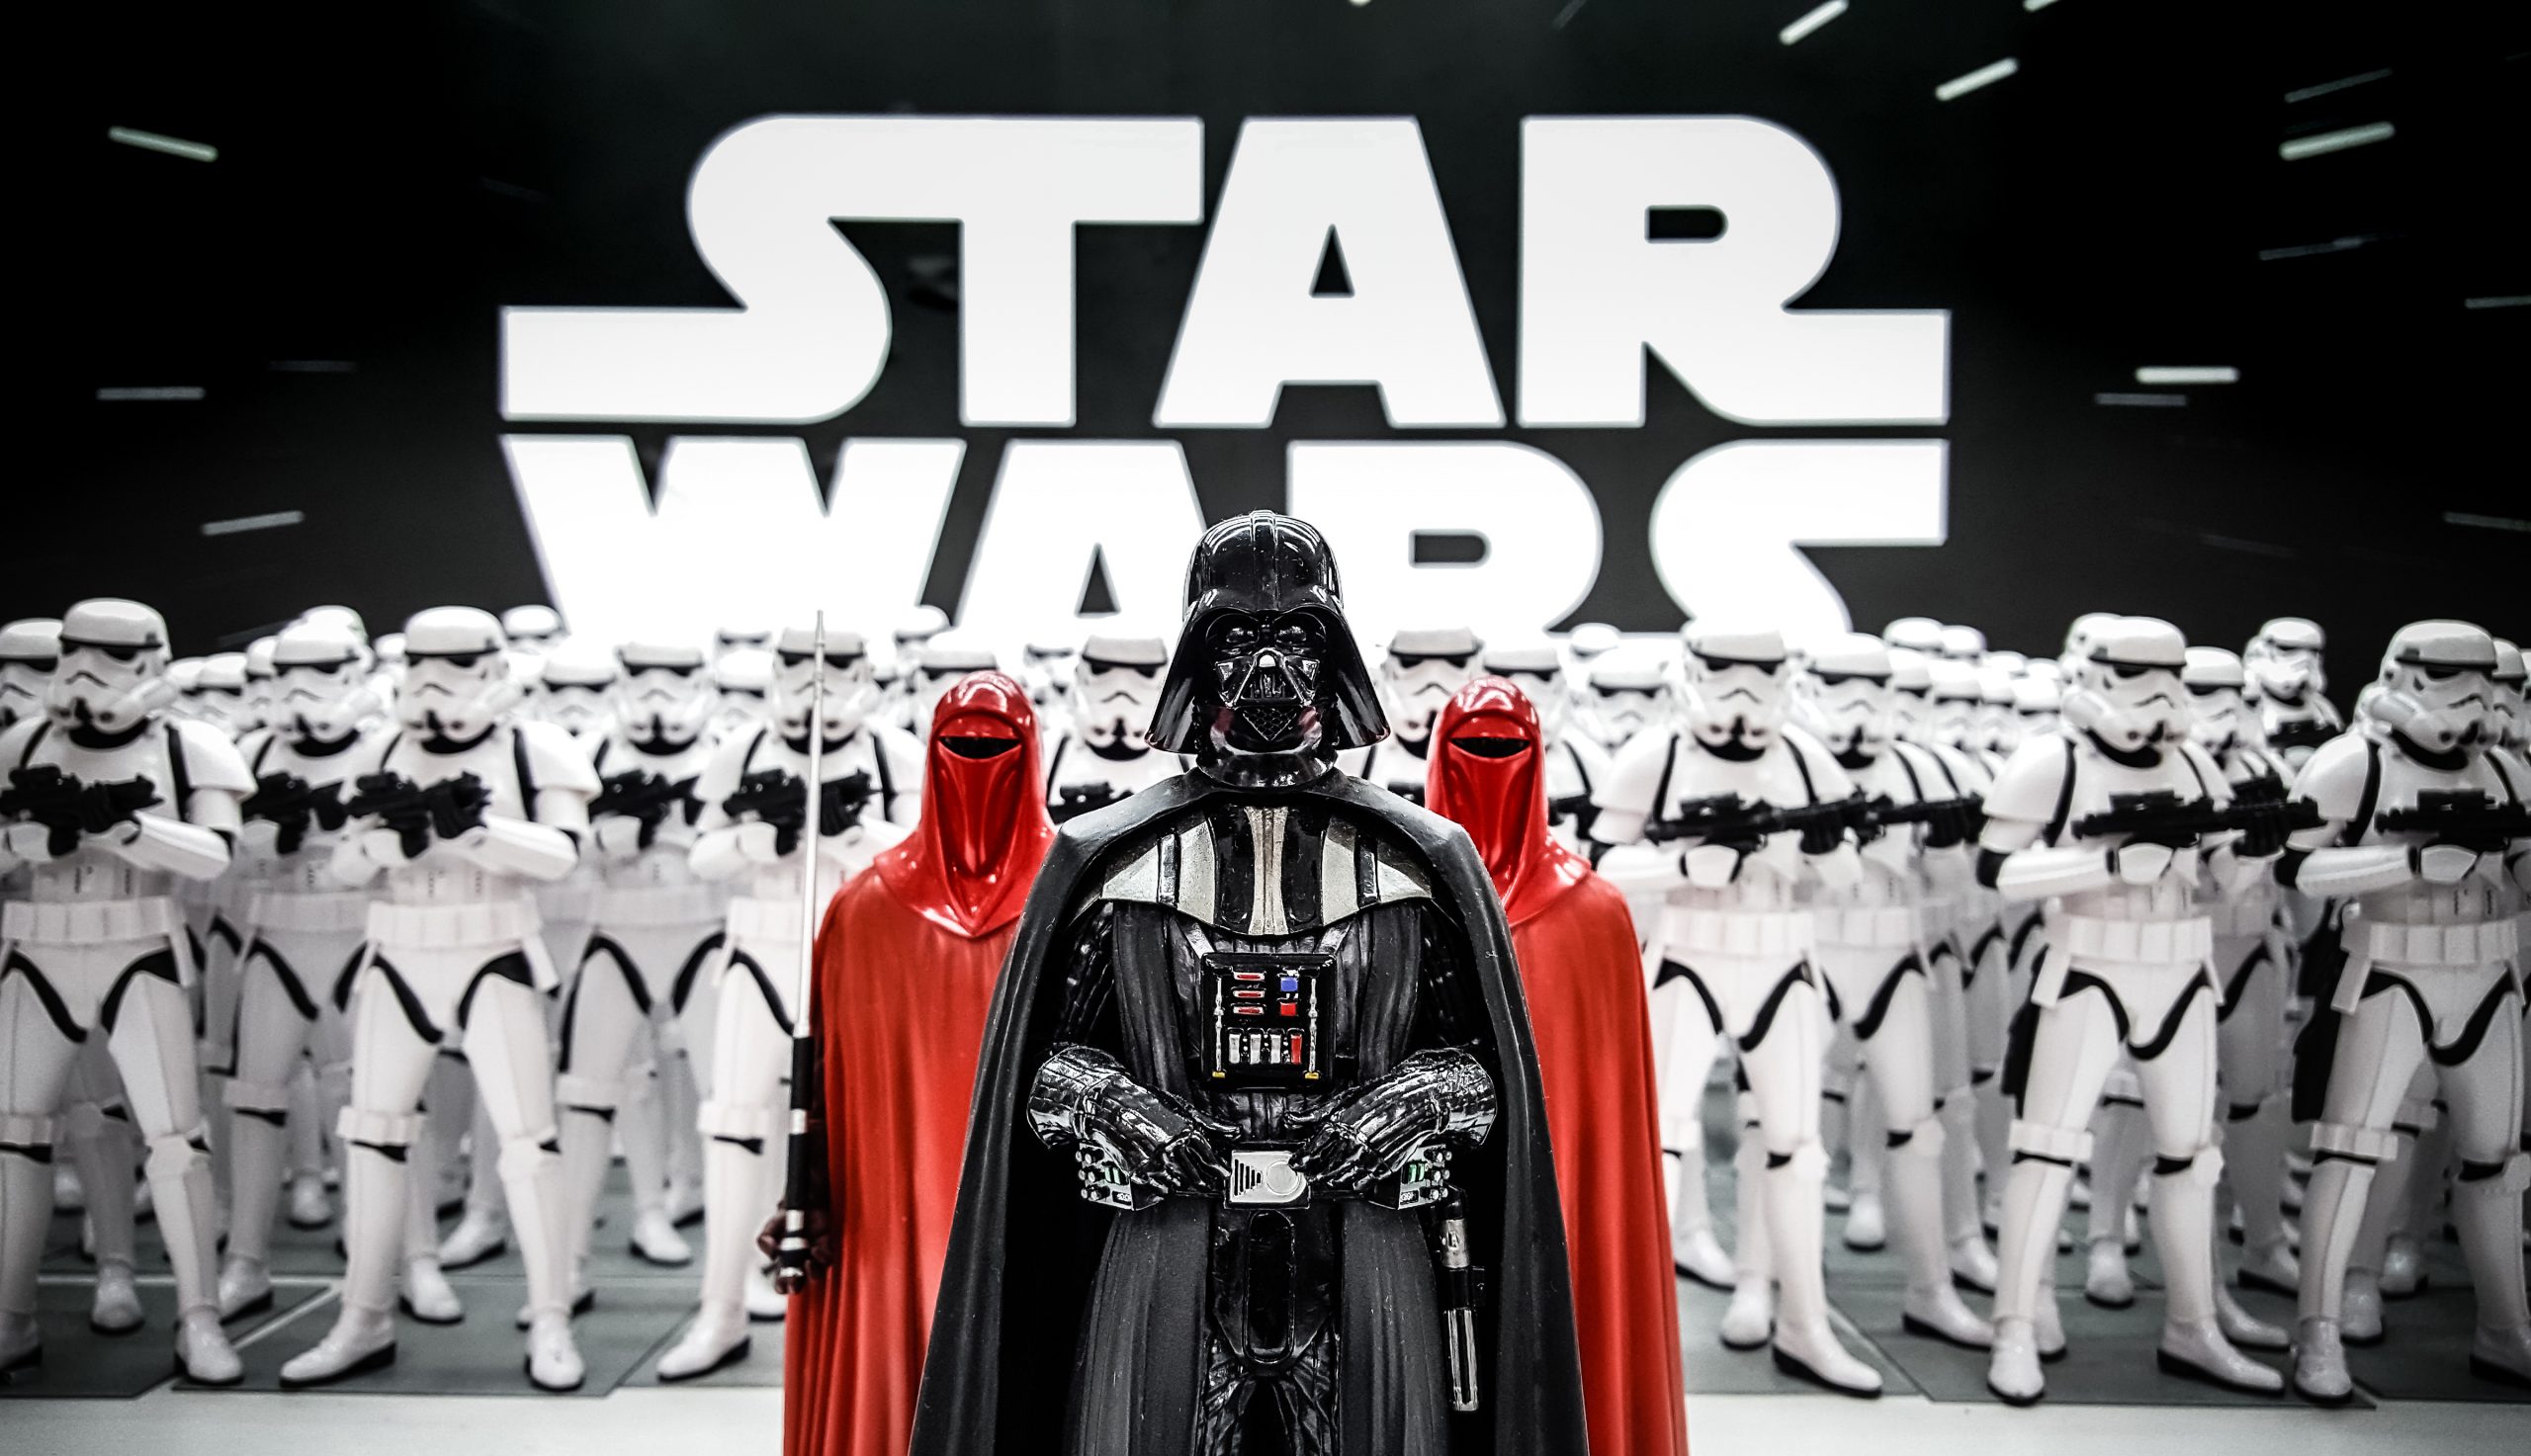 Szereted a Csillagok háborúját? Akkor irány az Országos Star Wars találkozó!